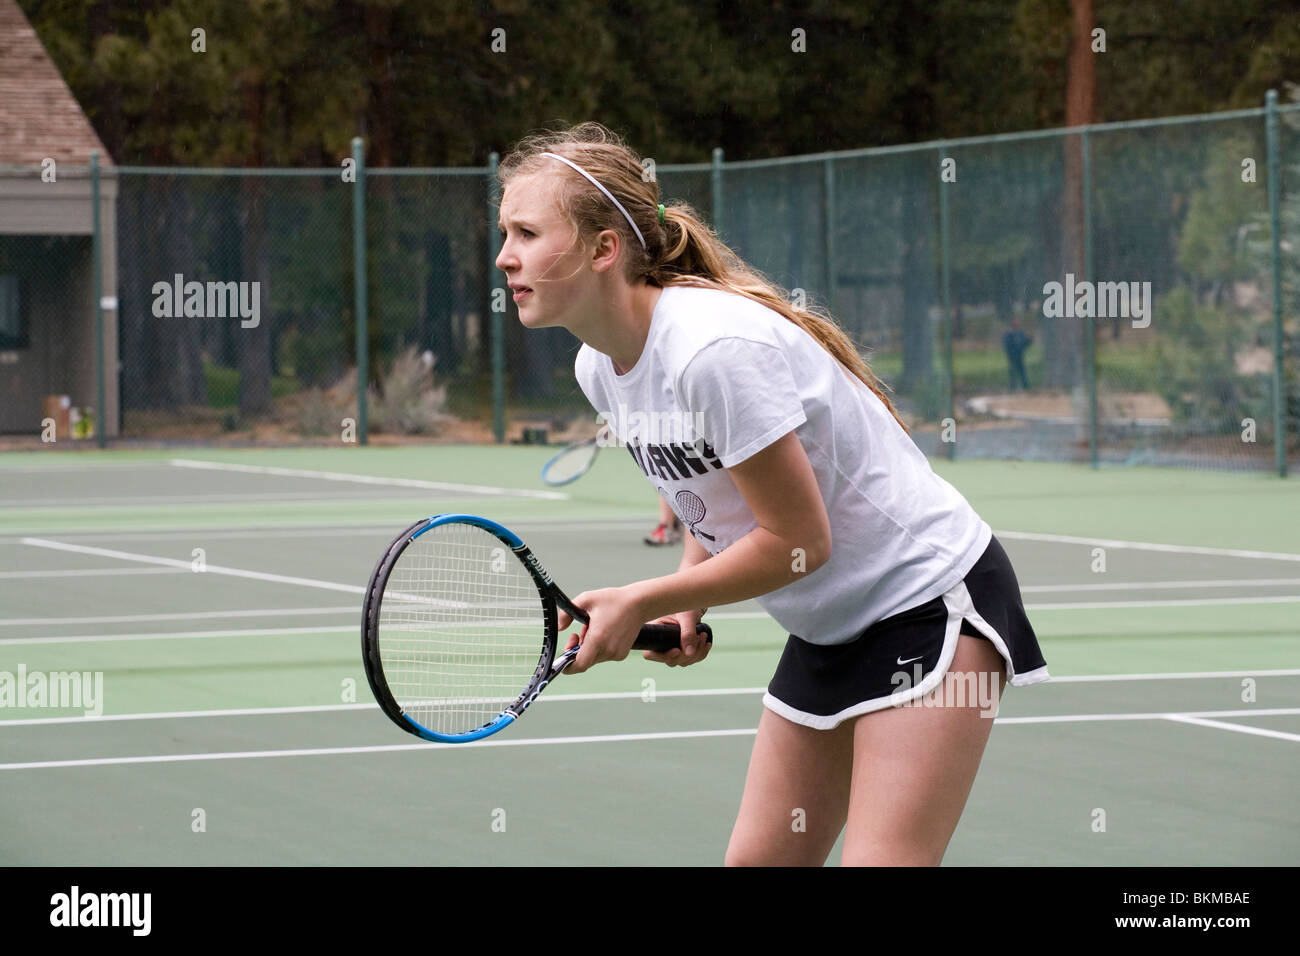 Un jugador de tenis high school en el varsity team en un partido de tenis Foto de stock